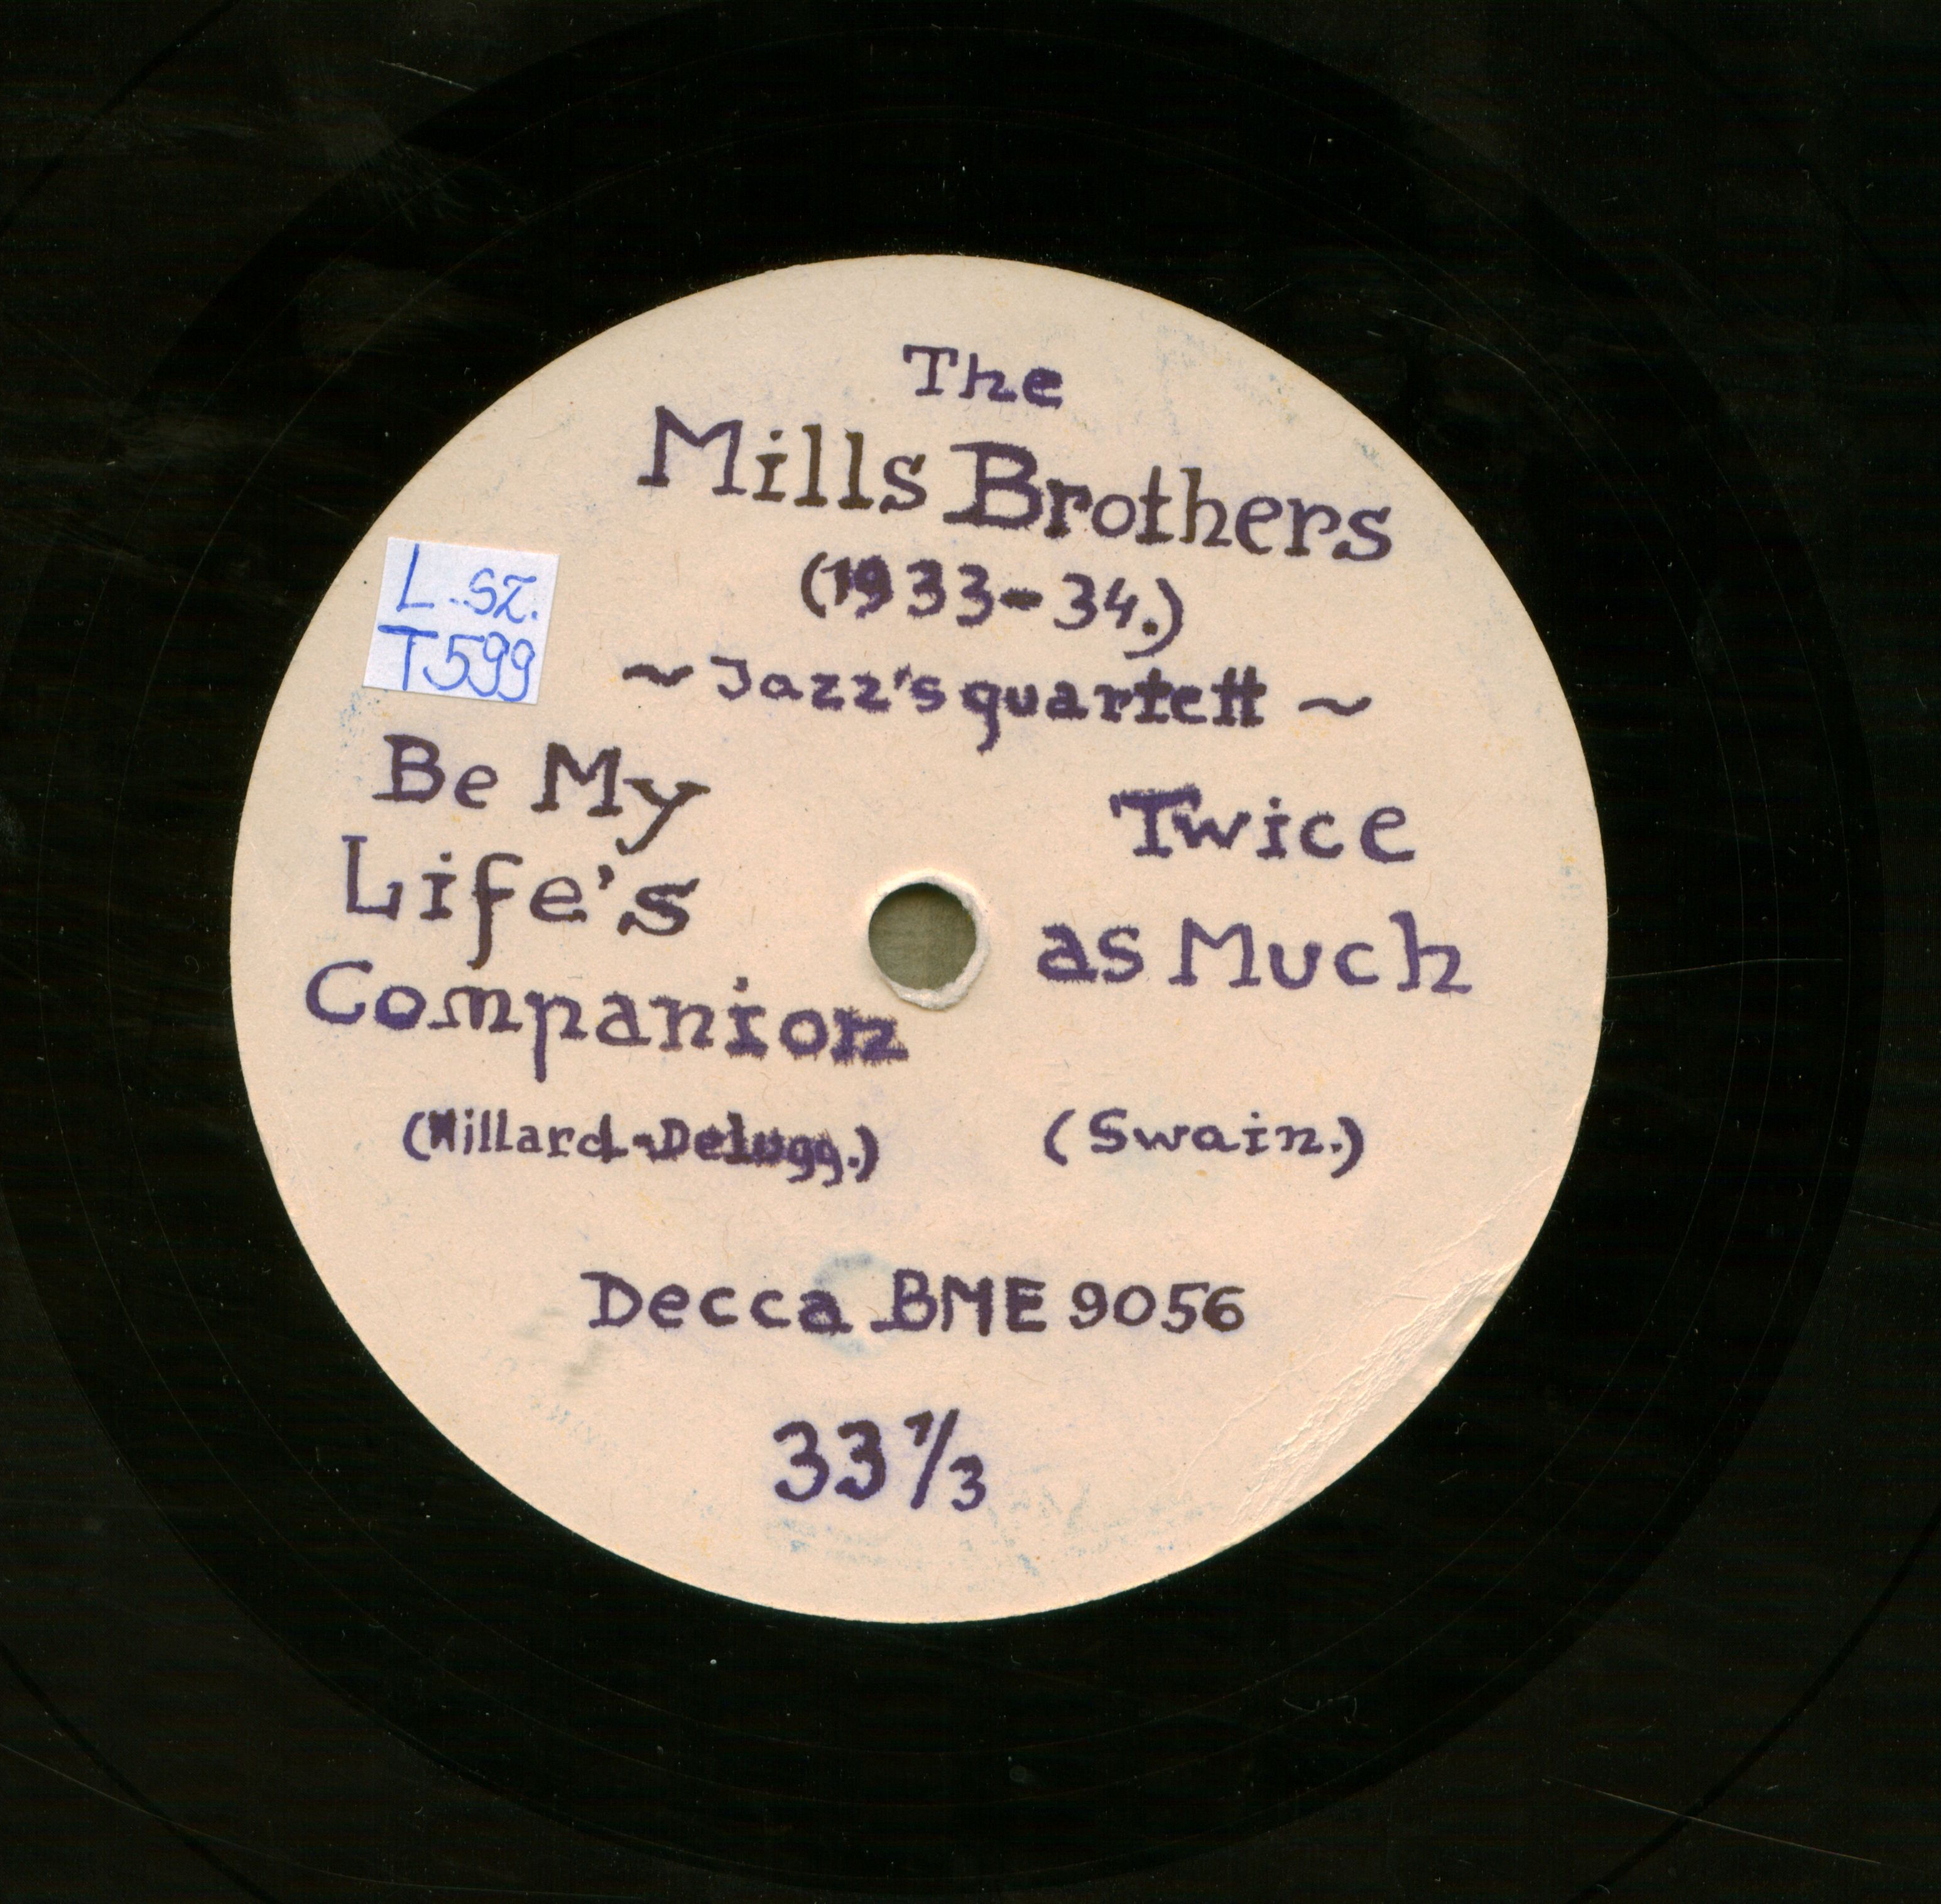 The Mills Brothers jazz's quartett (1933-34.)